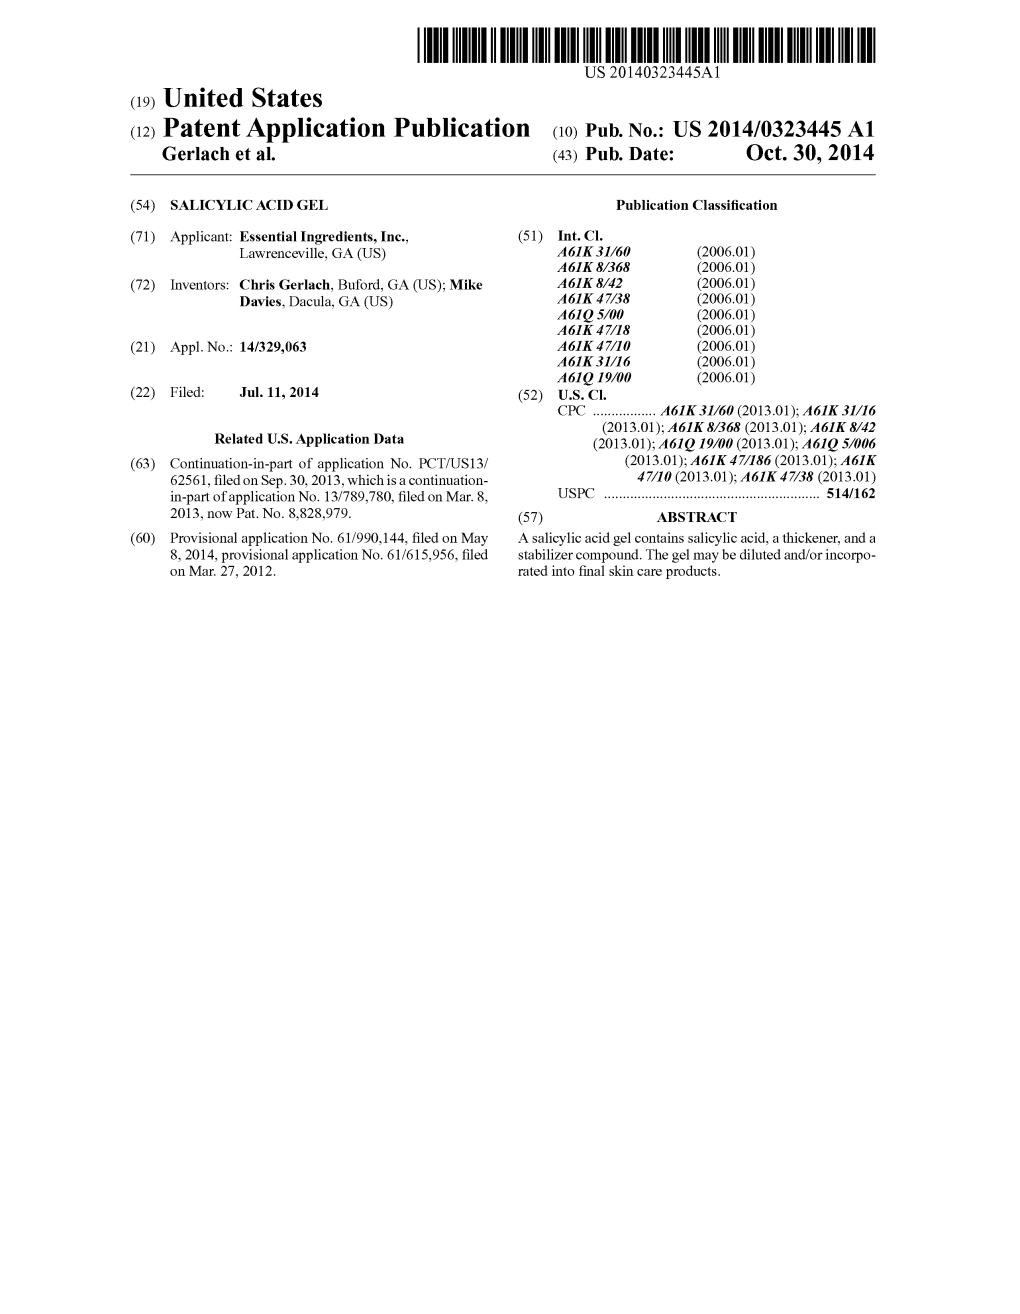 (12) Patent Application Publication (10) Pub. No.: US 2014/0323445 A1 Gerlach Et Al